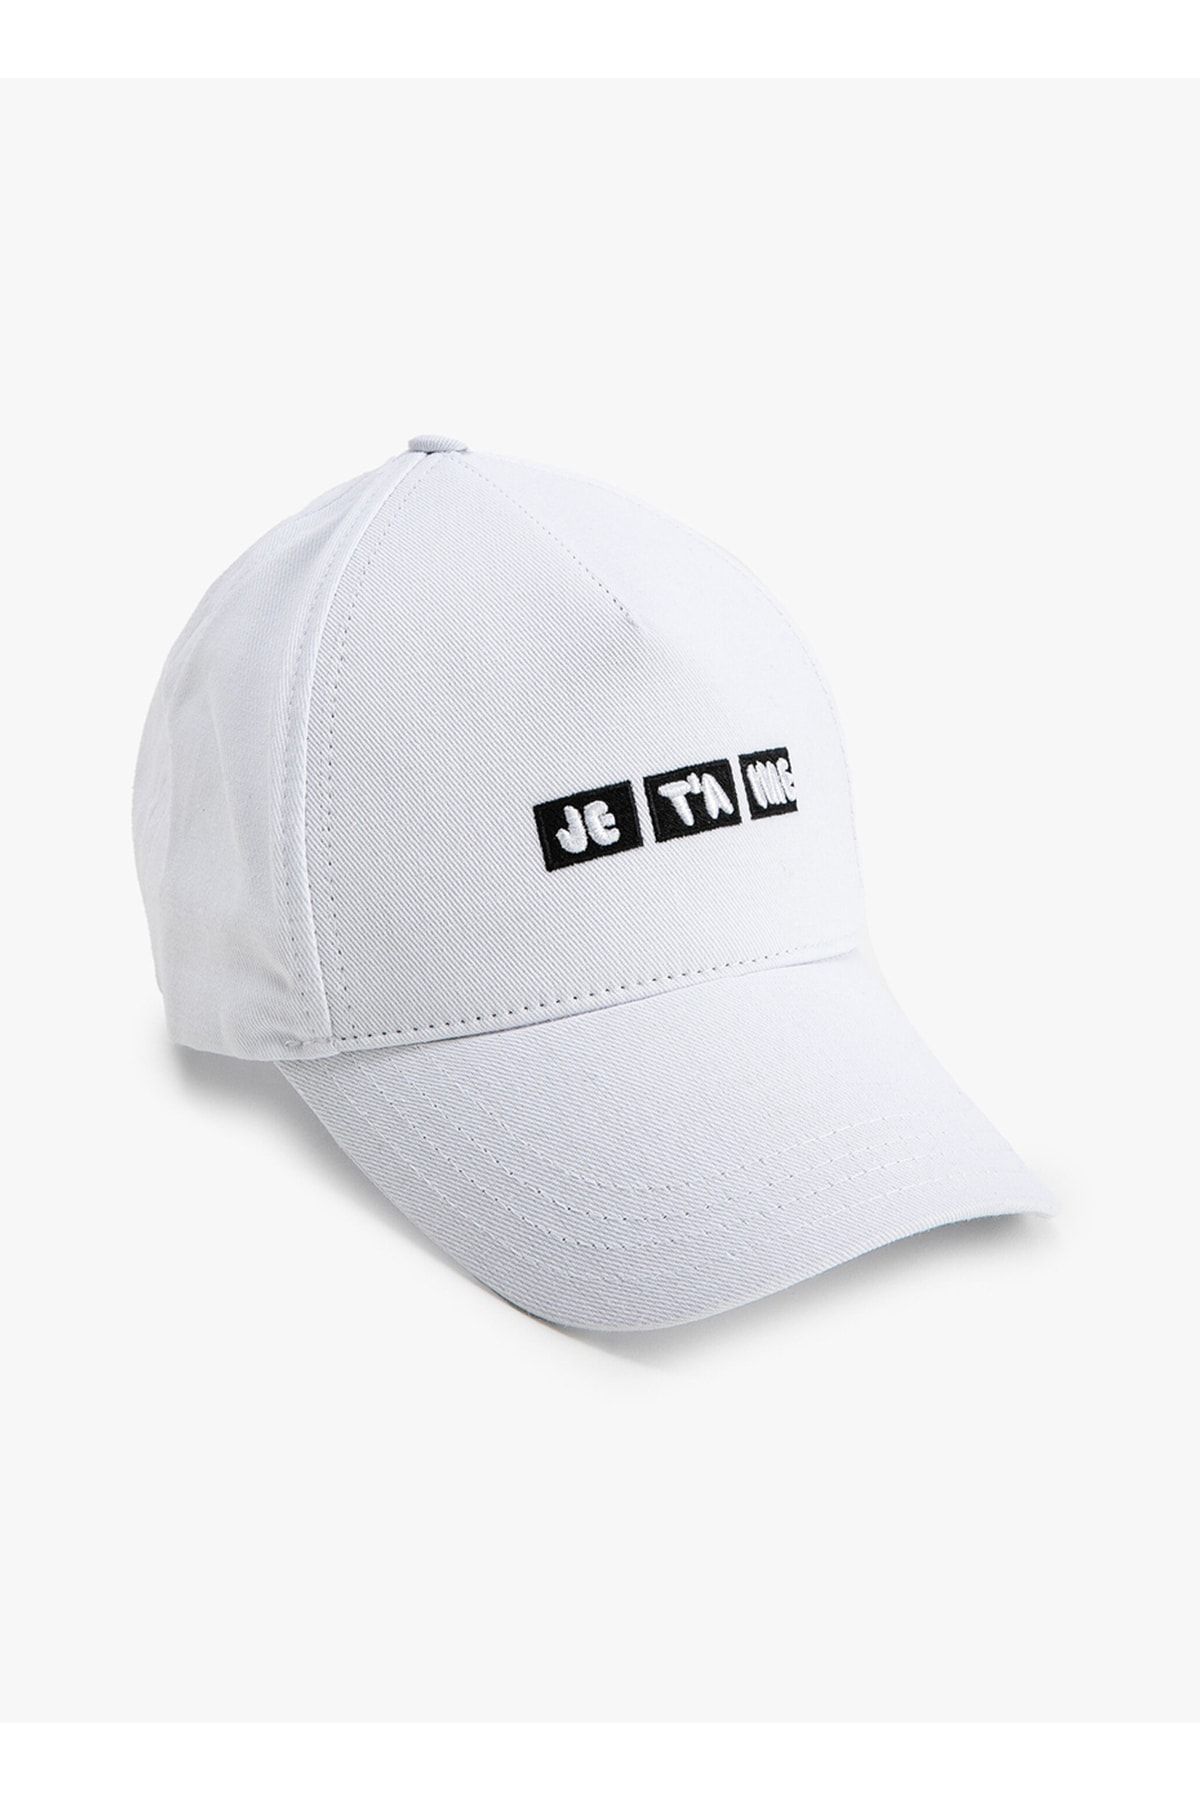 Koton Beyaz Kadın Şapka 3sak40002aa